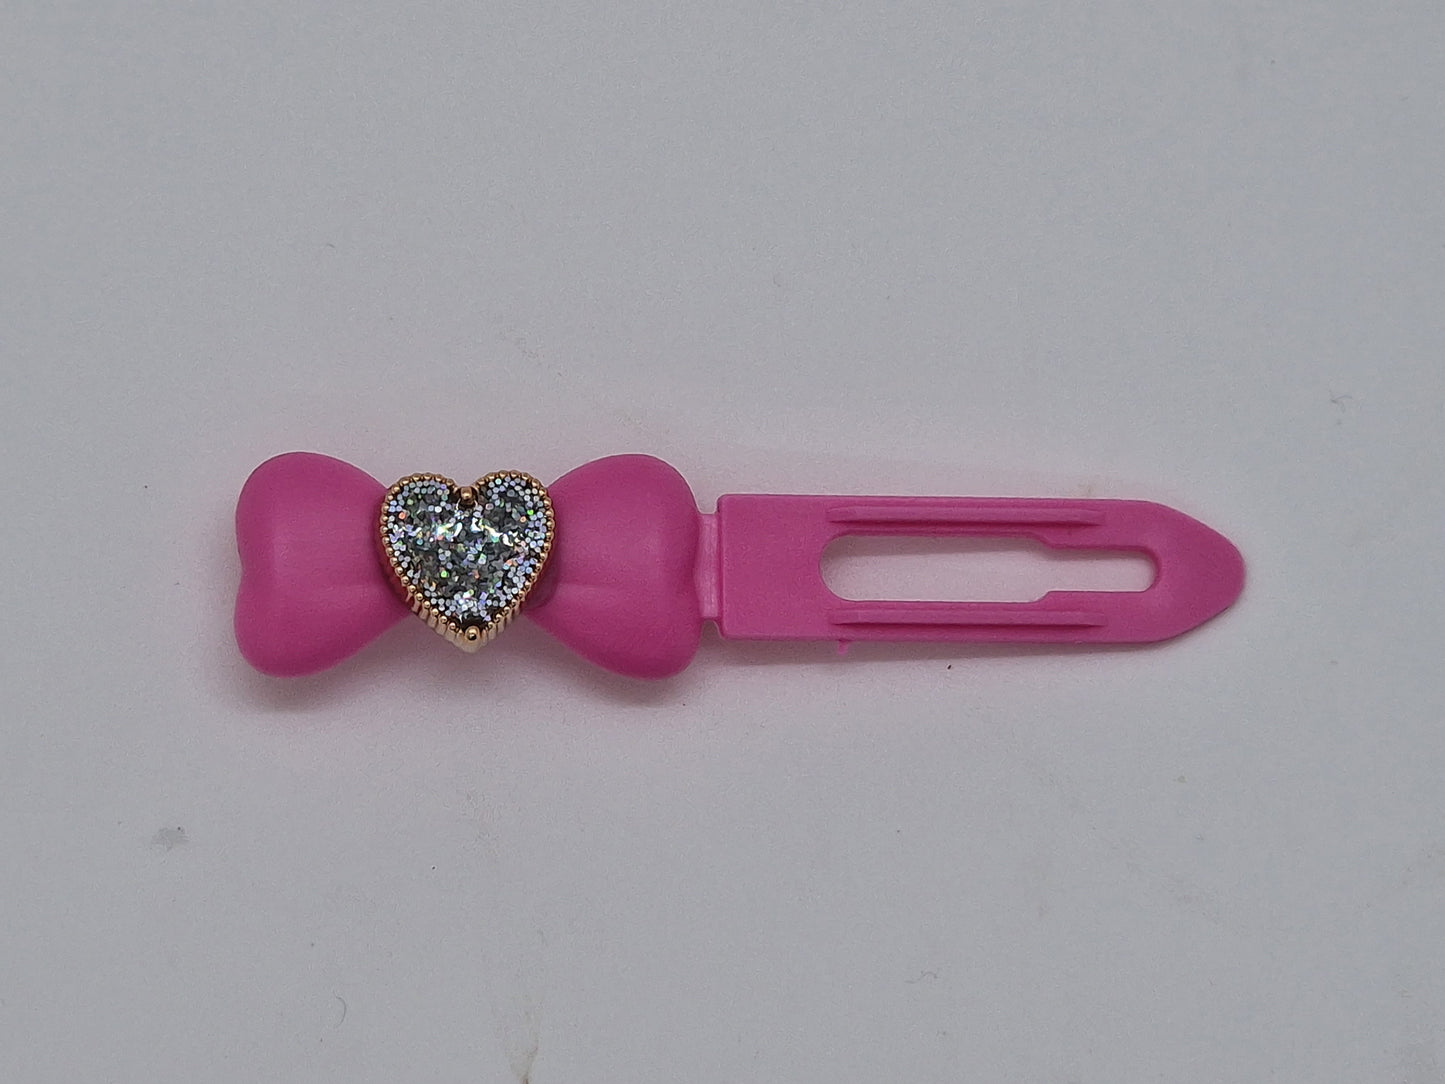 Herzspange mit glitzernden Diamanten, 3,5 cm, neuartiger Clip